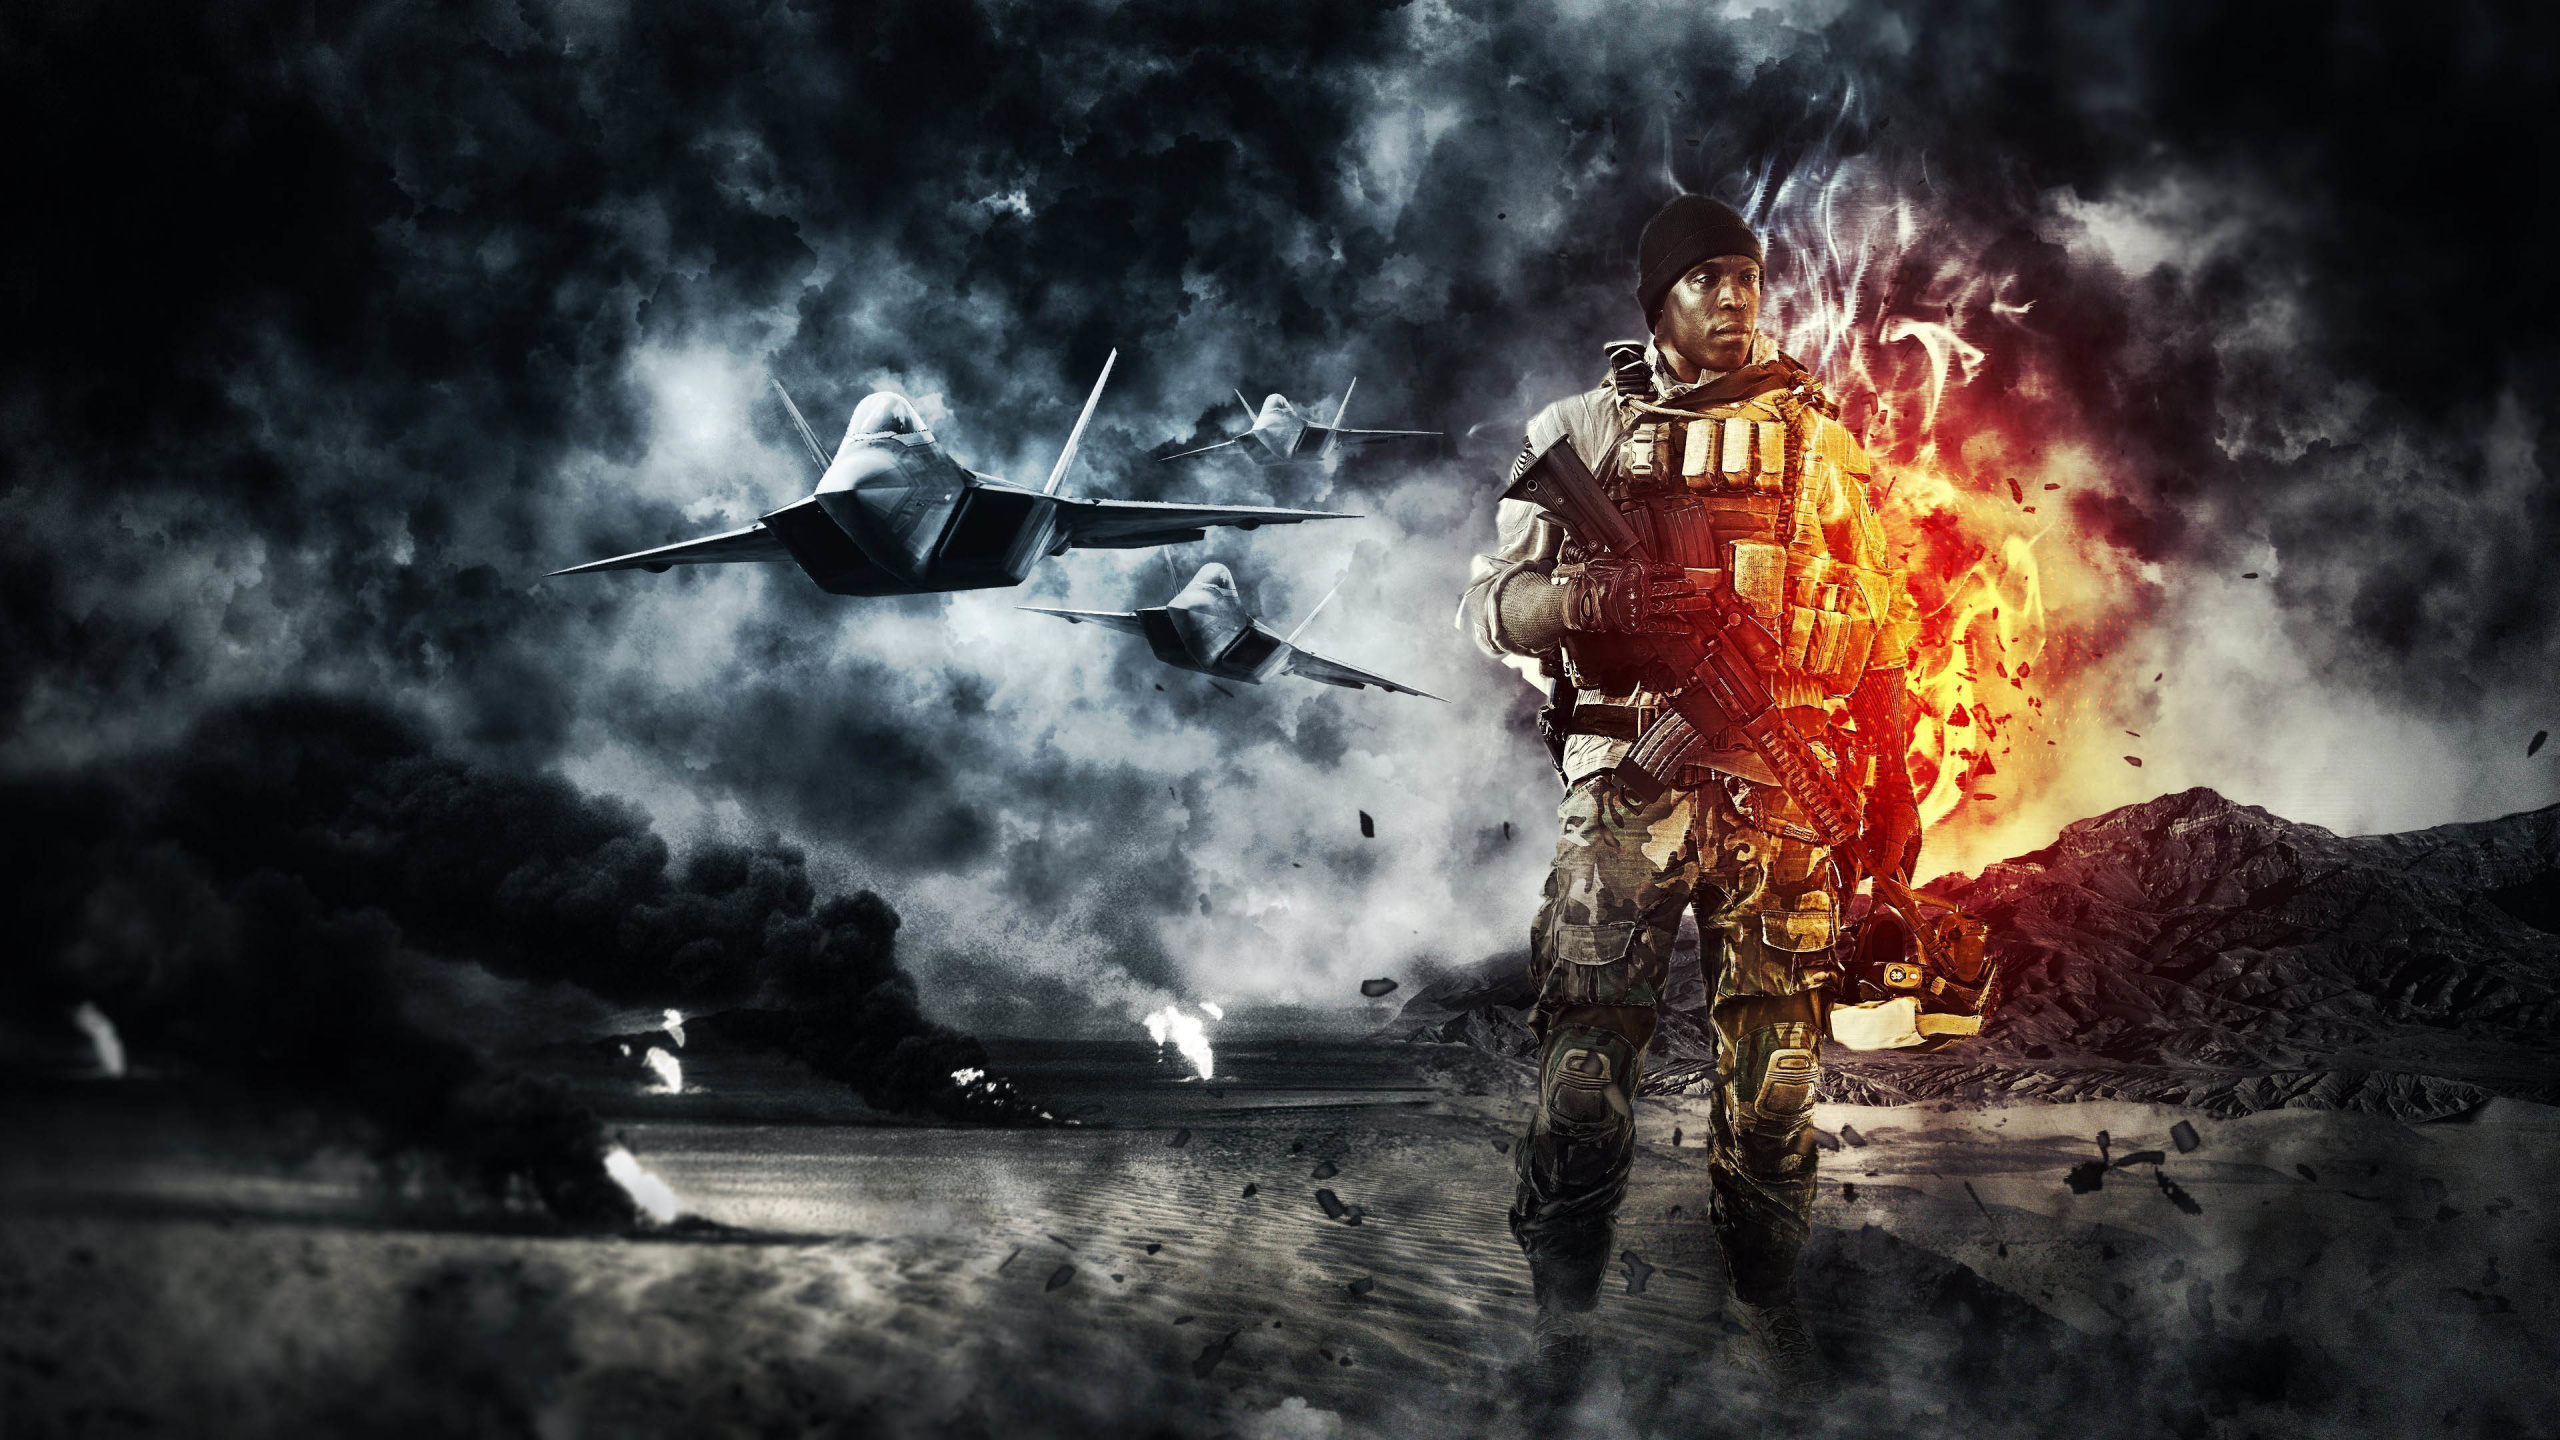 Rauch, Explosion, Knall, Atmosphäre, Battlefield 4. Wallpaper in 2560x1440 Resolution